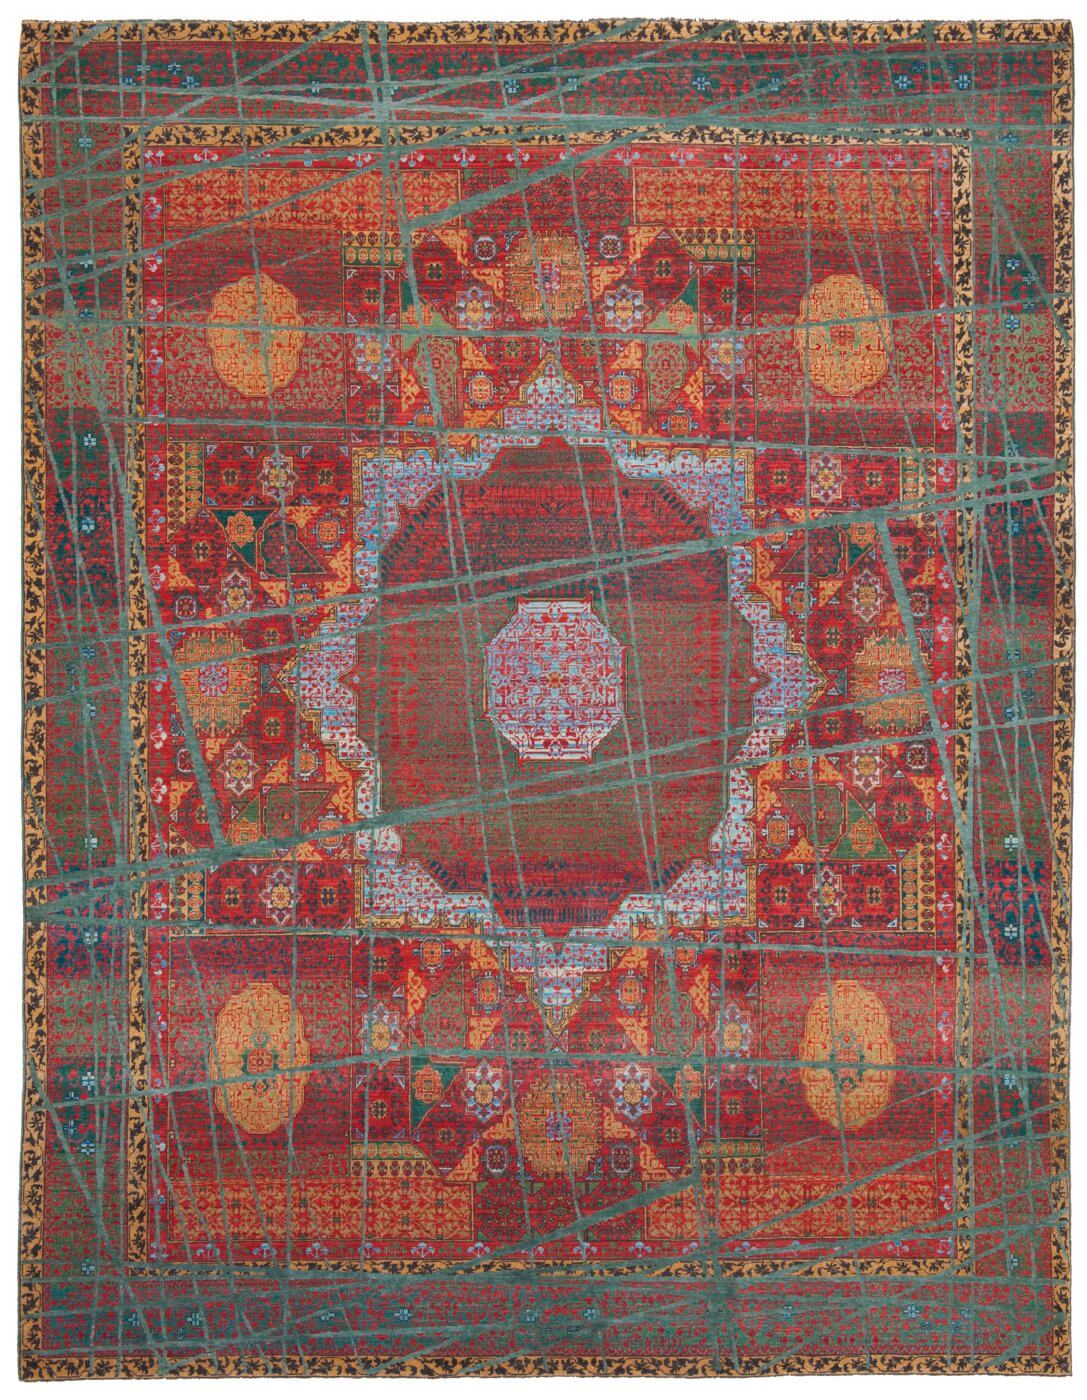 Mamluk Hand-woven Wool Luxury Rug ☞ Size: 200 x 300 cm